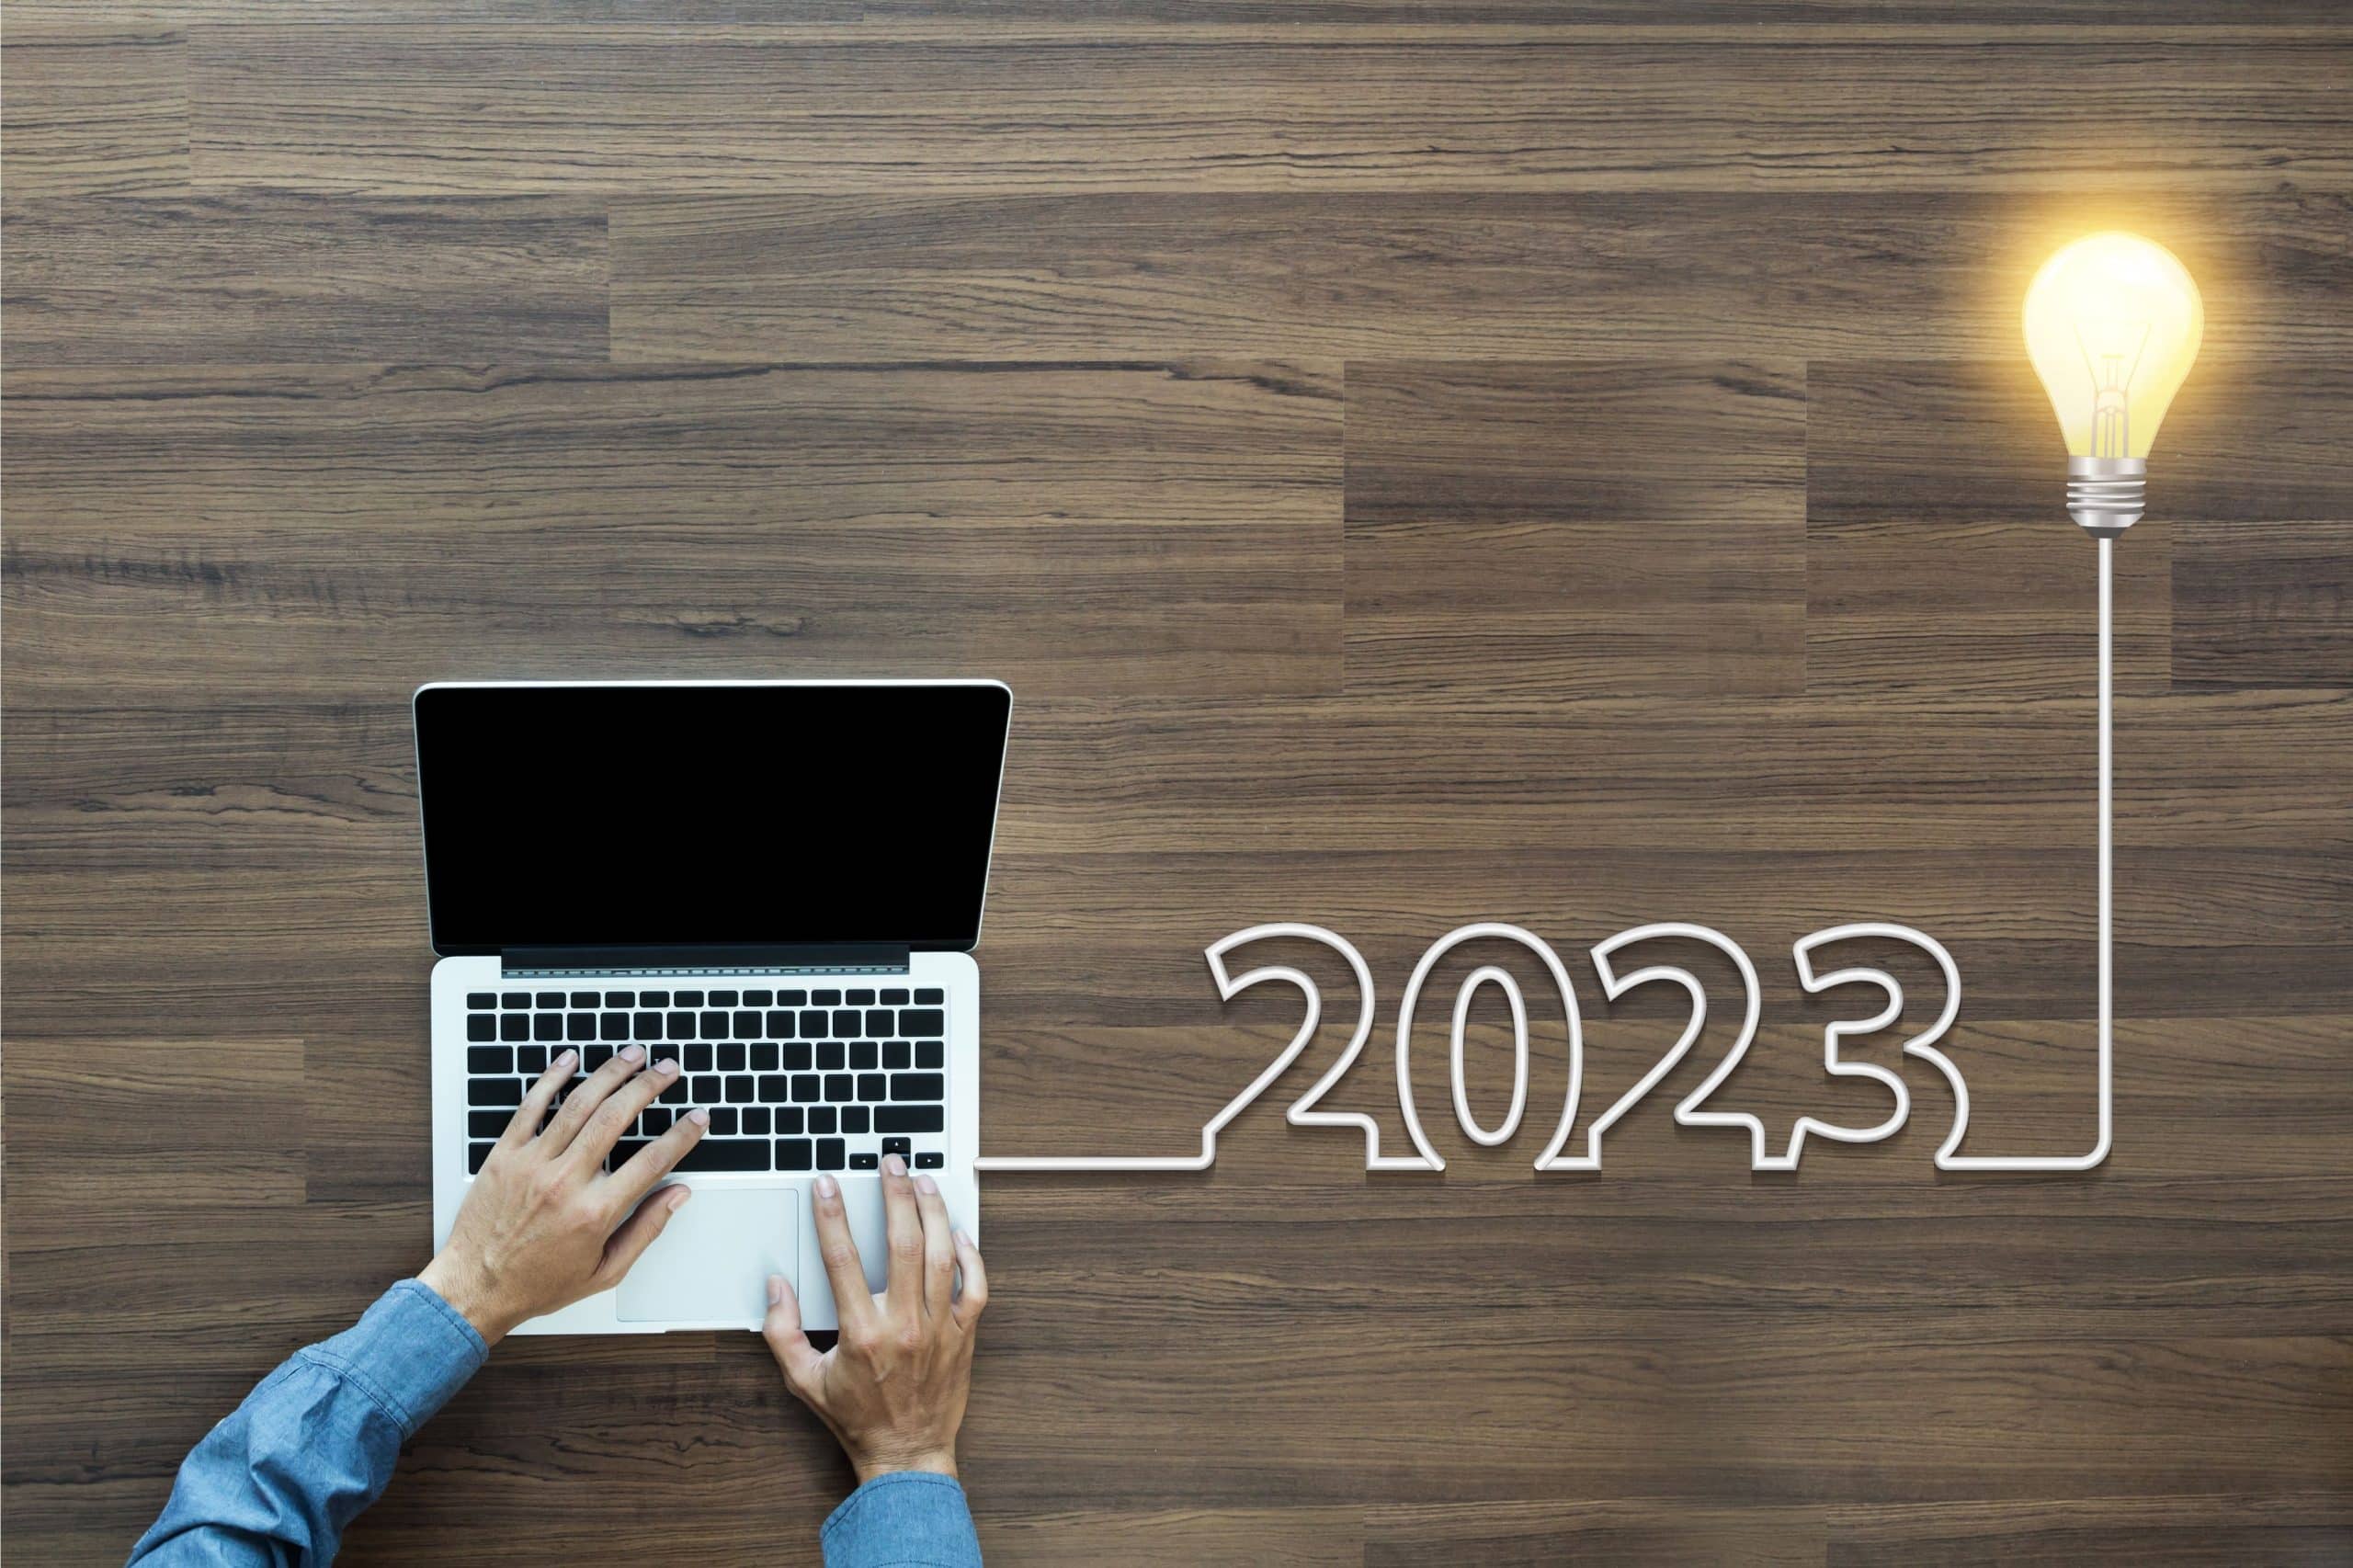 O futuro das mídias sociais: 9 tendências e previsões para 2023 e além